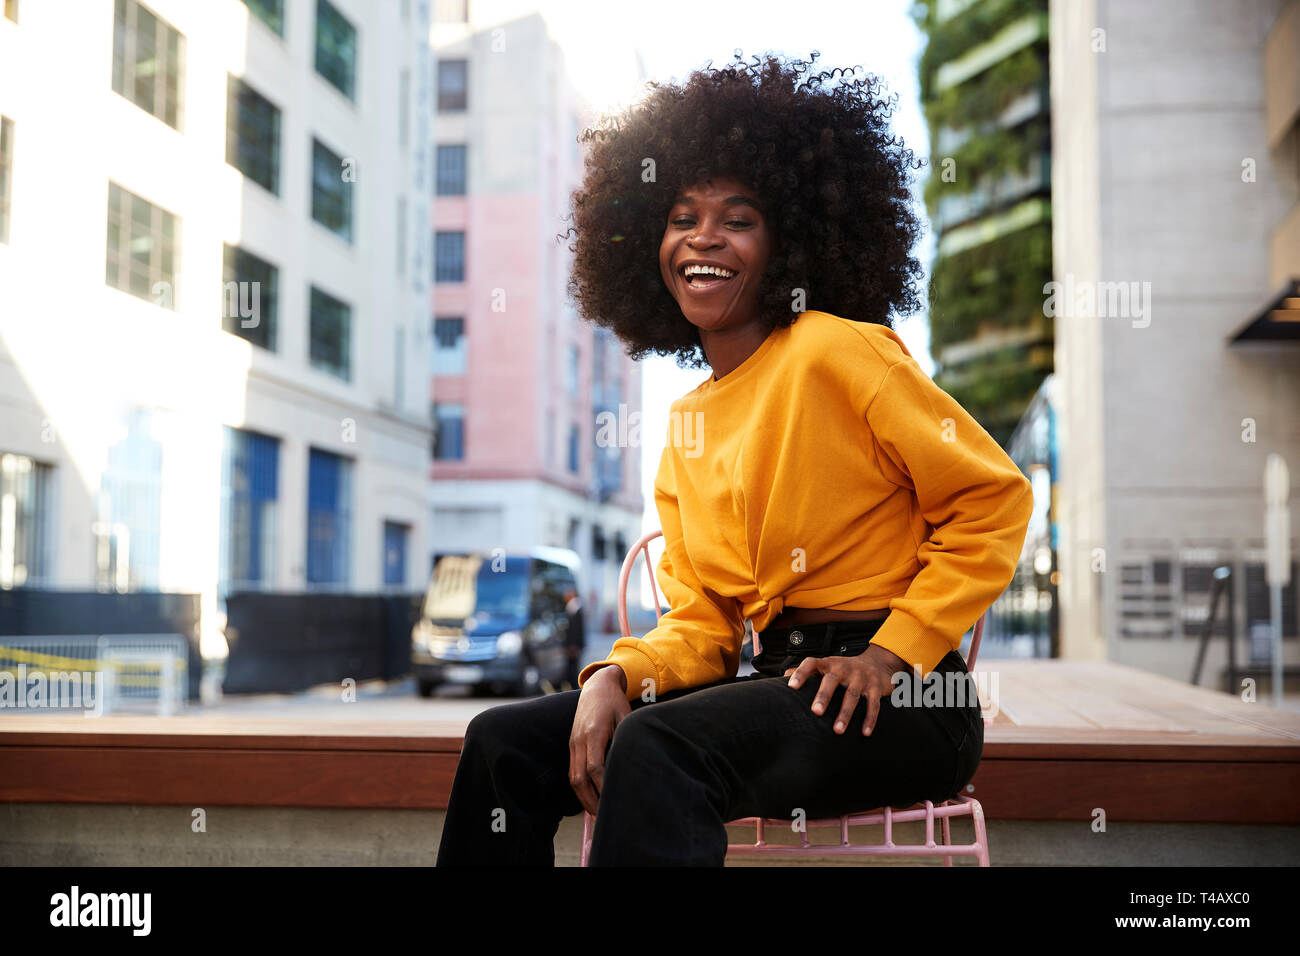 Junge schwarze Frau mit afro Haar sitzt auf einem Stuhl in der Straße an der Kamera lachend Stockfoto